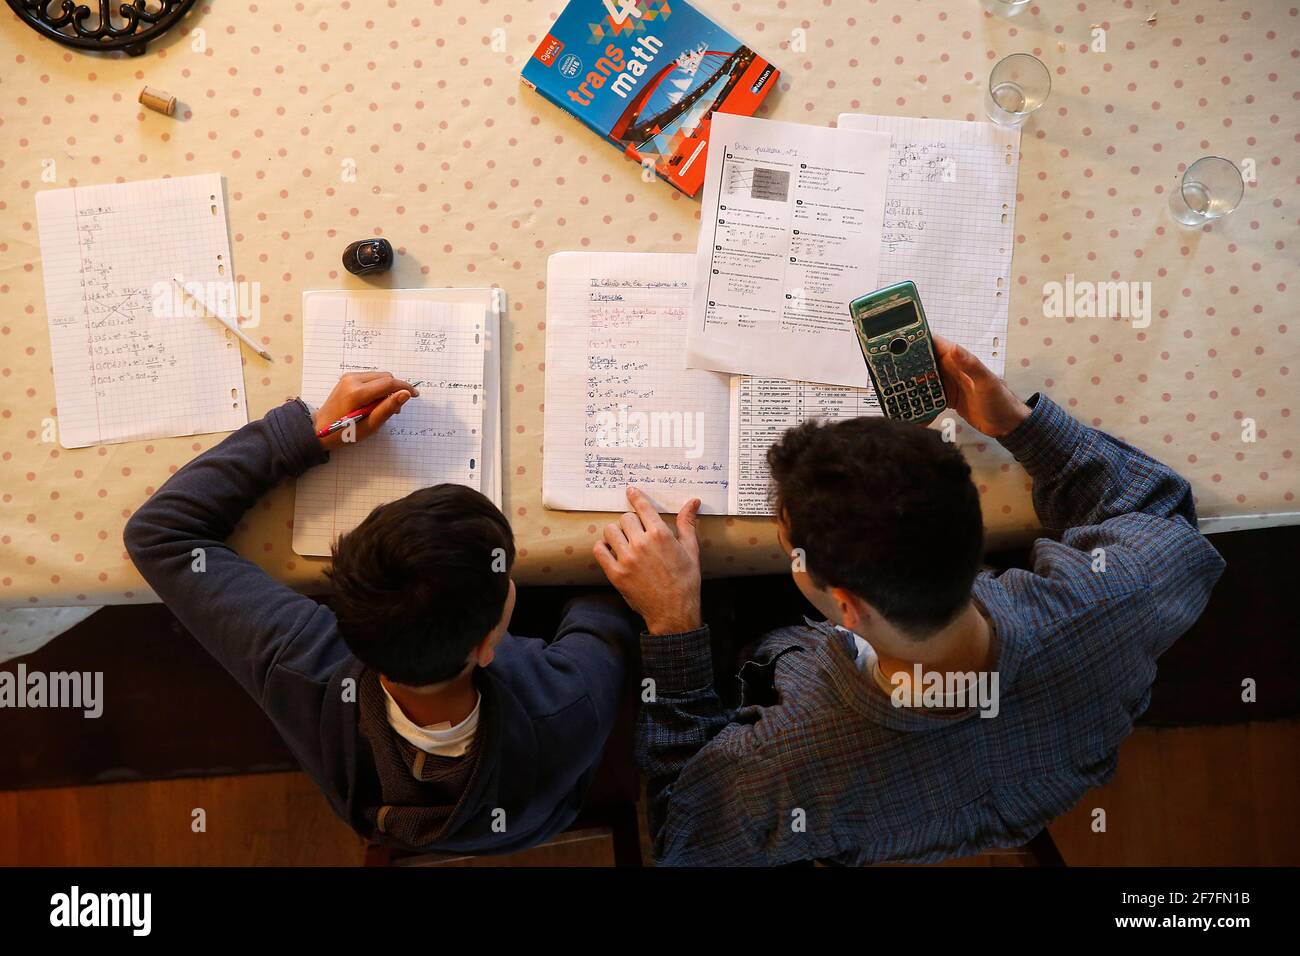 Jeune homme aidant un garçon avec ses devoirs à Montrouge, France, Europe Banque D'Images